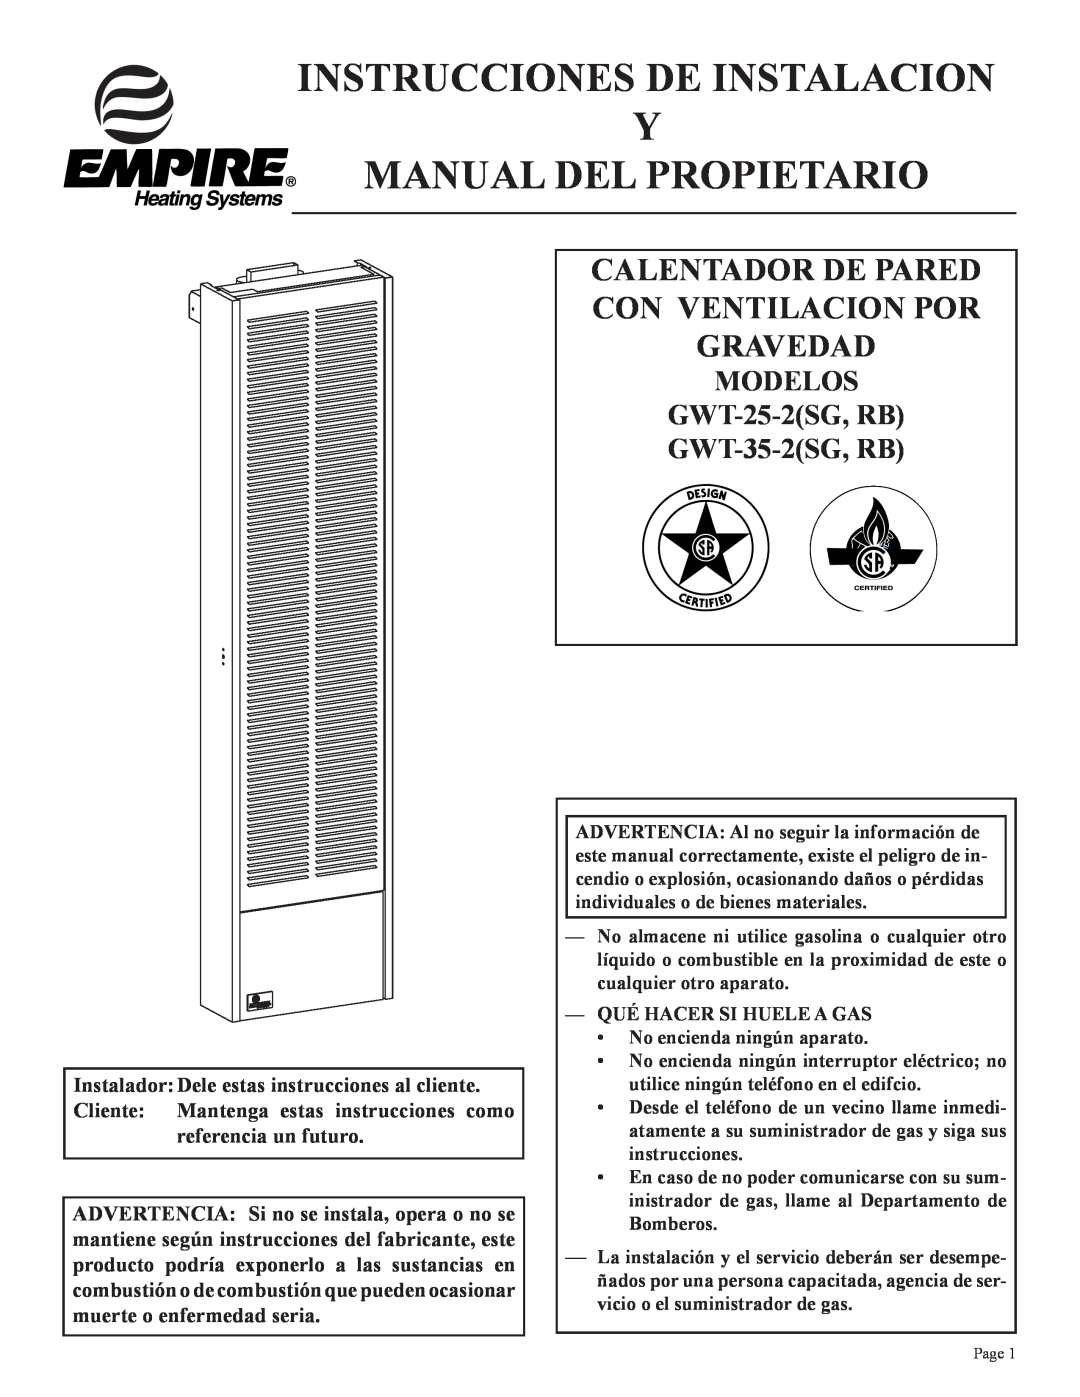 Empire Products GWT-35-2(SG Calentador De Pared Con Ventilacion Por Gravedad, MODELOS GWT-25-2SG,RB GWT-35-2SG,RB 